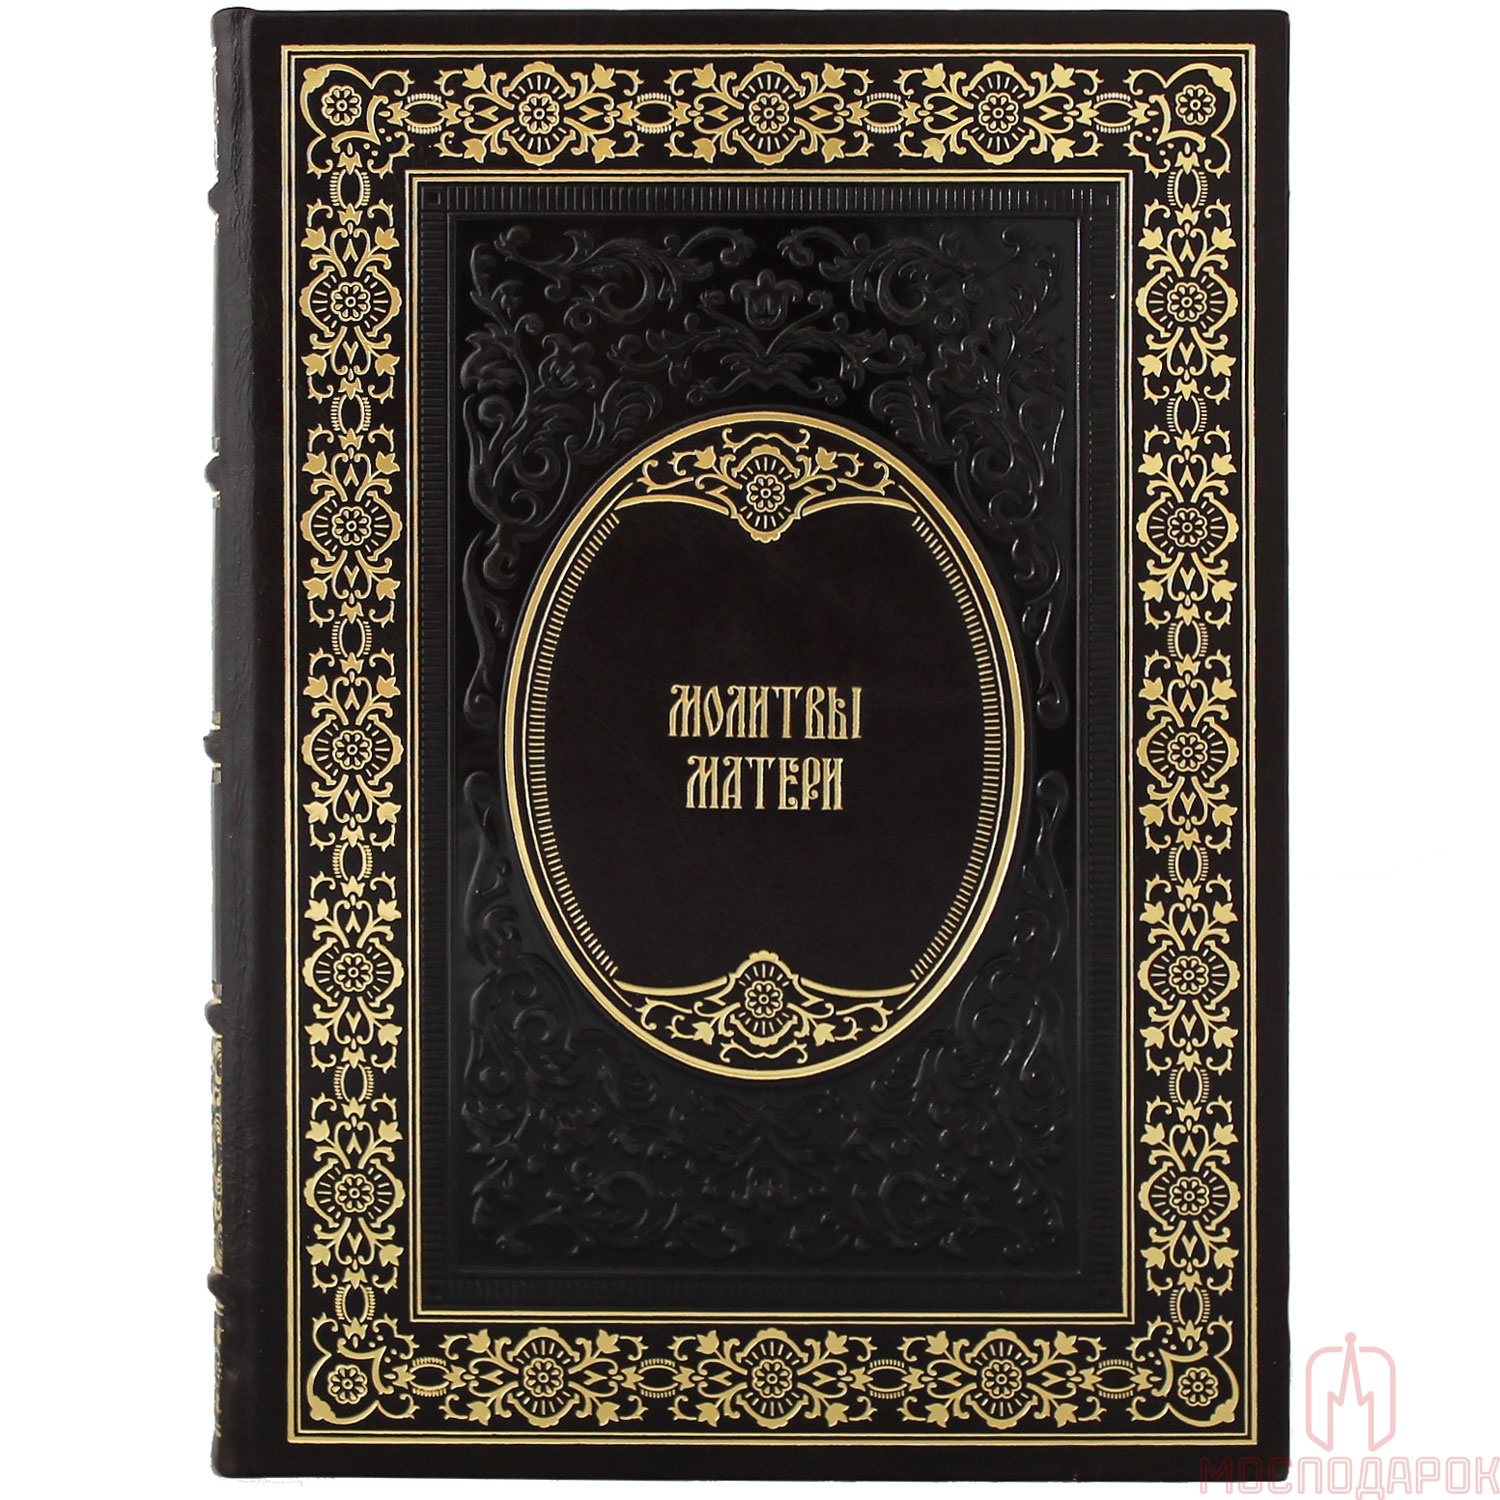 Подарочное издание "Молитвы Матери" с иконой - артикул: 205322 | Мосподарок 